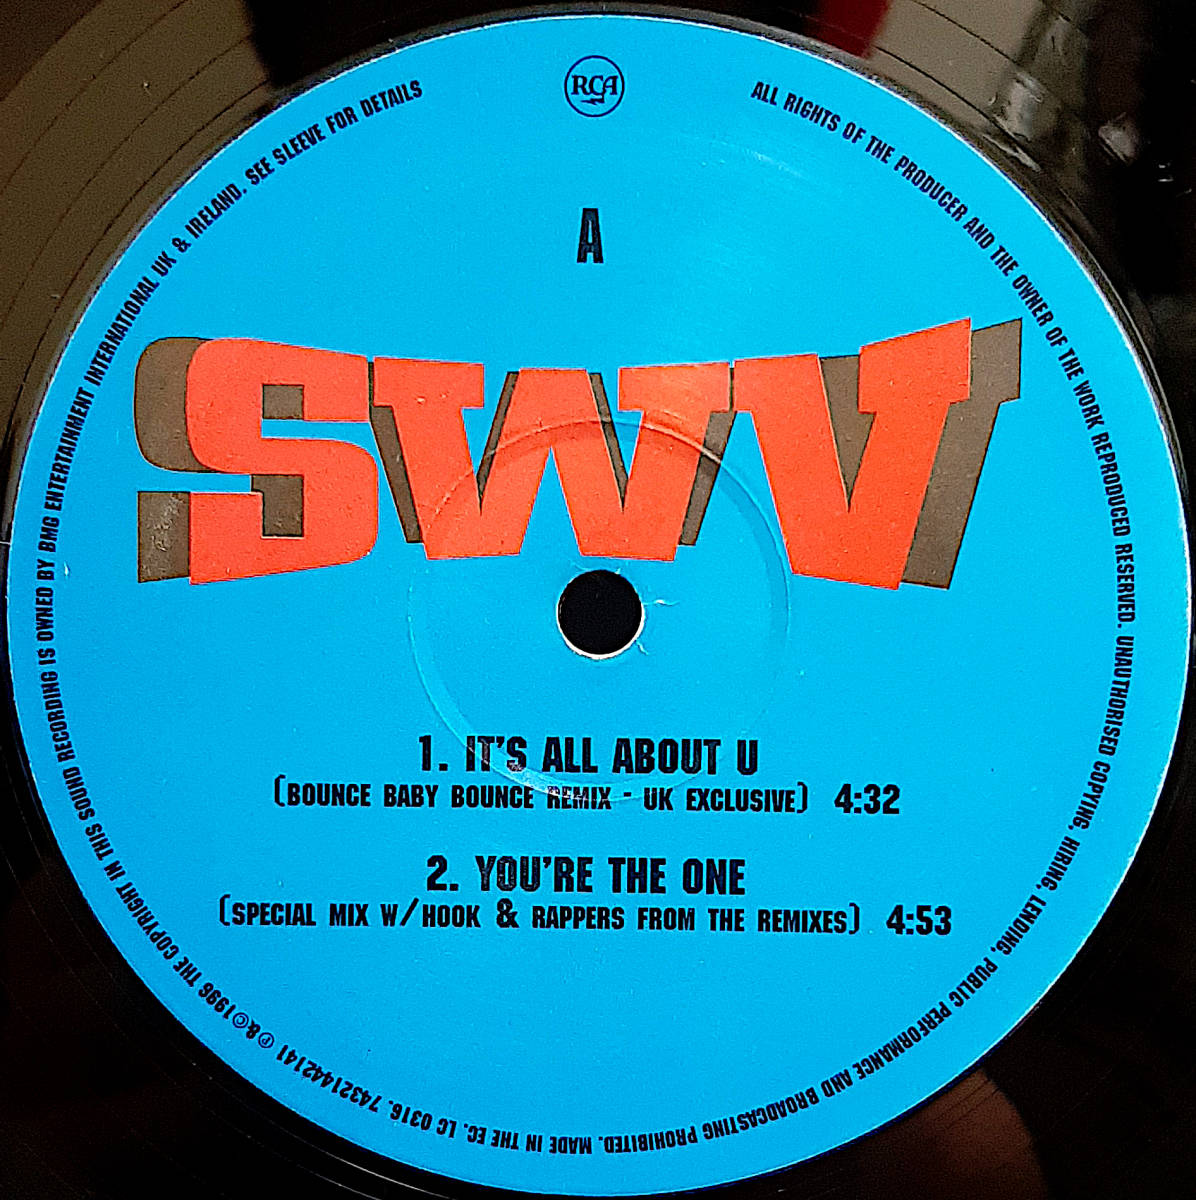 即決送料無料【UKオリ盤12インチレコード】SWV - It's All About U / You're The One (Special Mix) (96年) / UK ONLY LIMITED REMIX VINYL